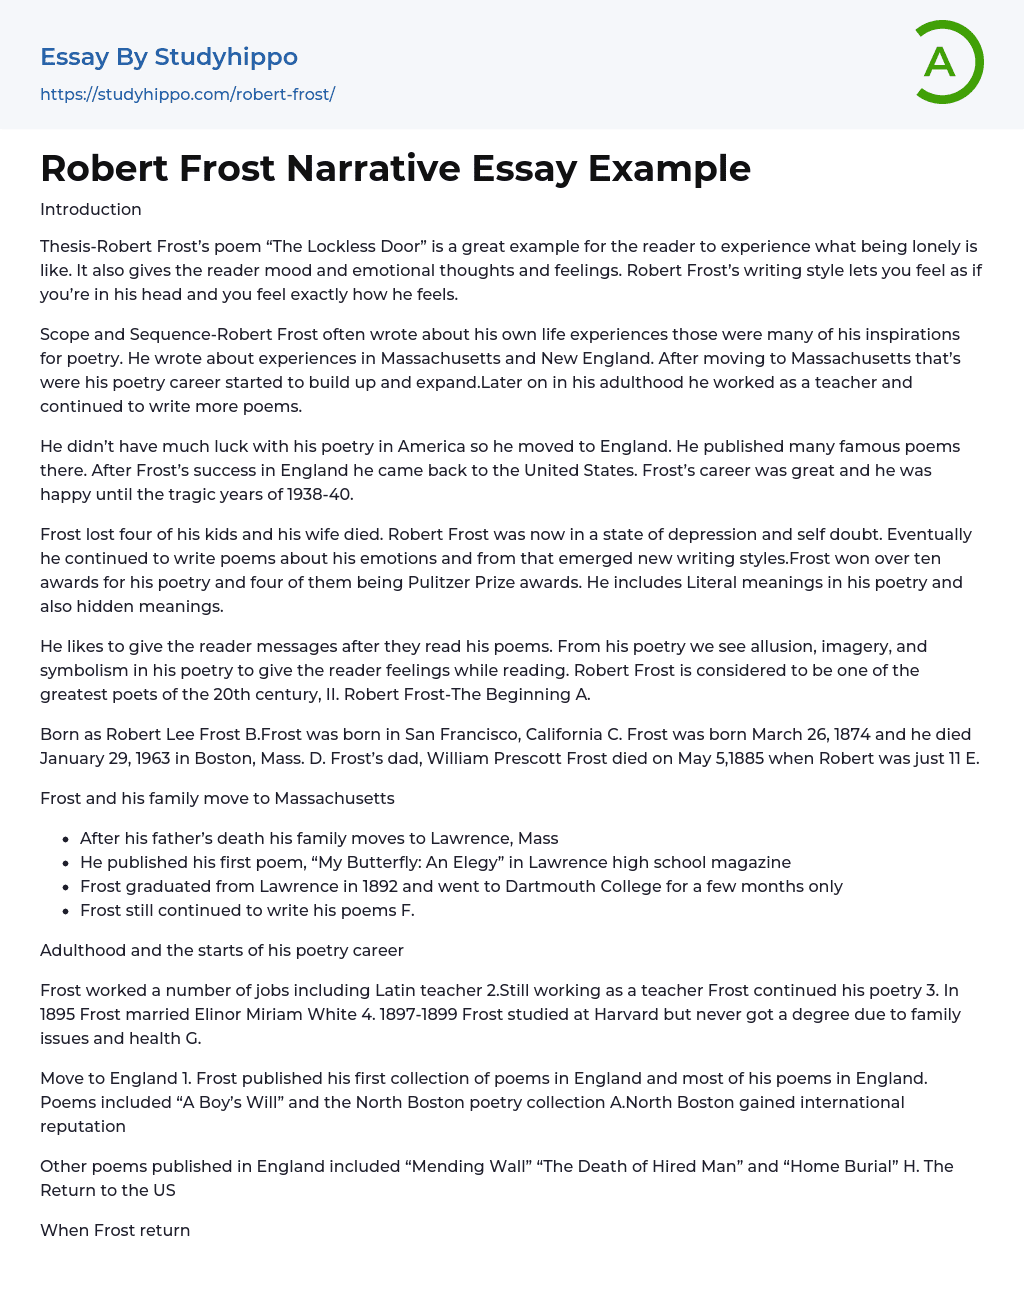 Robert Frost Narrative Essay Example